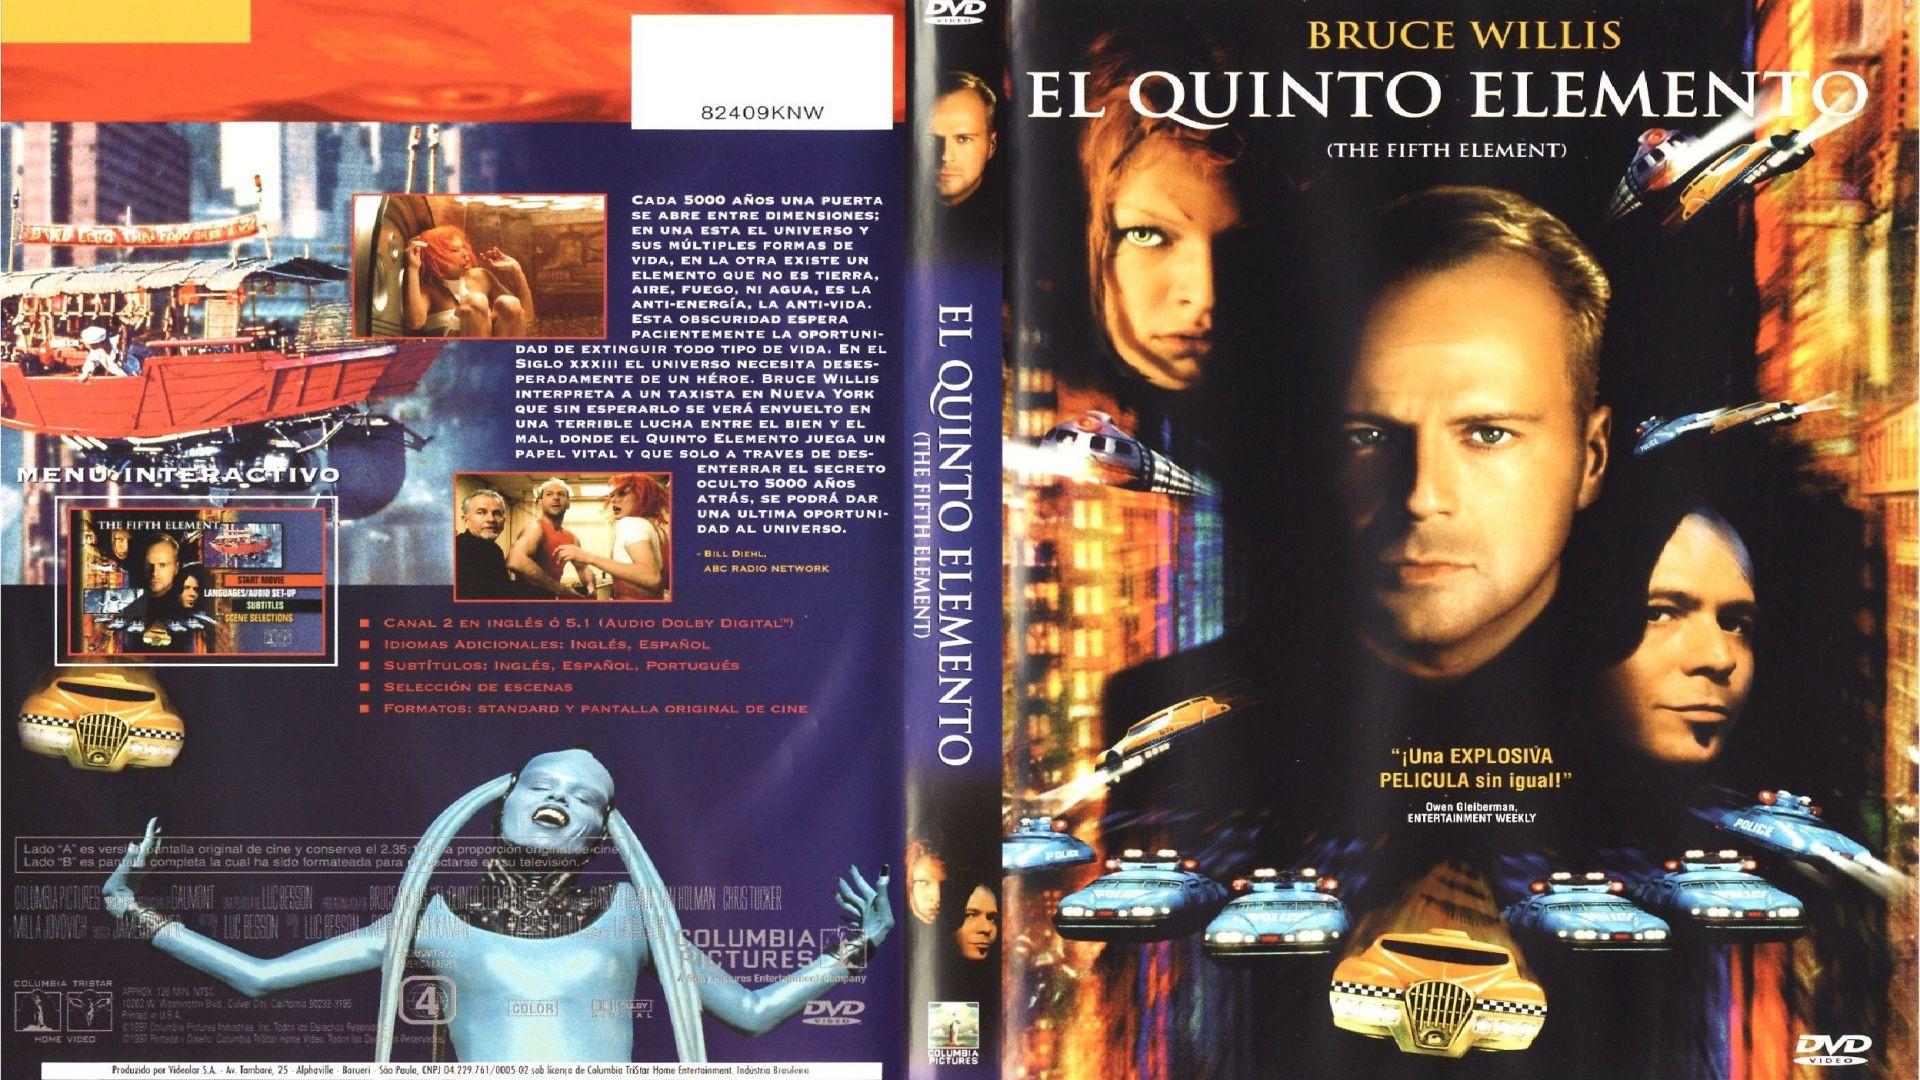 El Quinto Elemento (1997) cas.